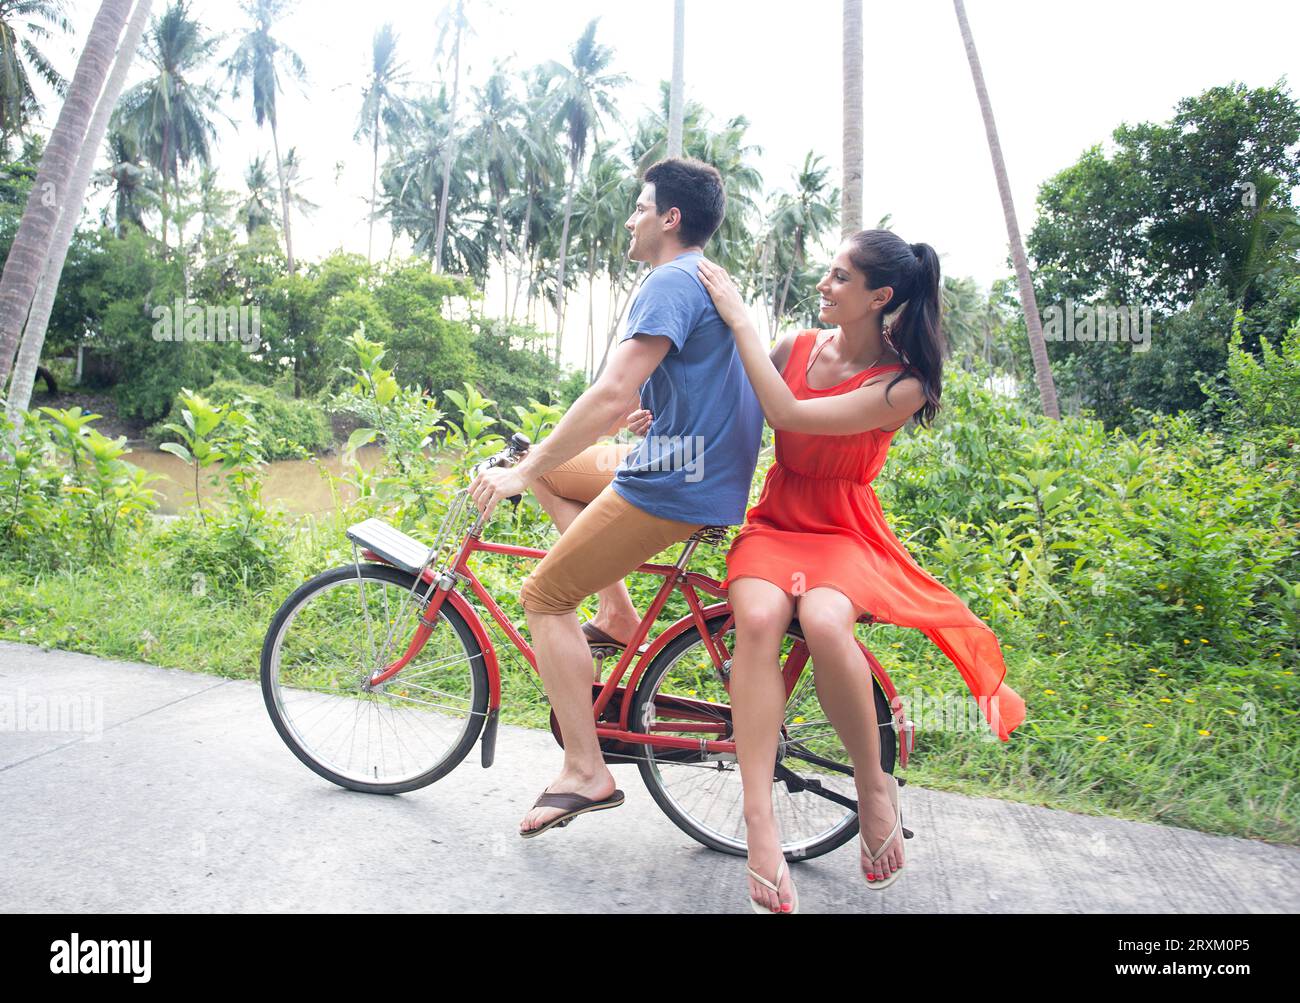 Coppia in bicicletta tandem in un ambiente tropicale Foto Stock